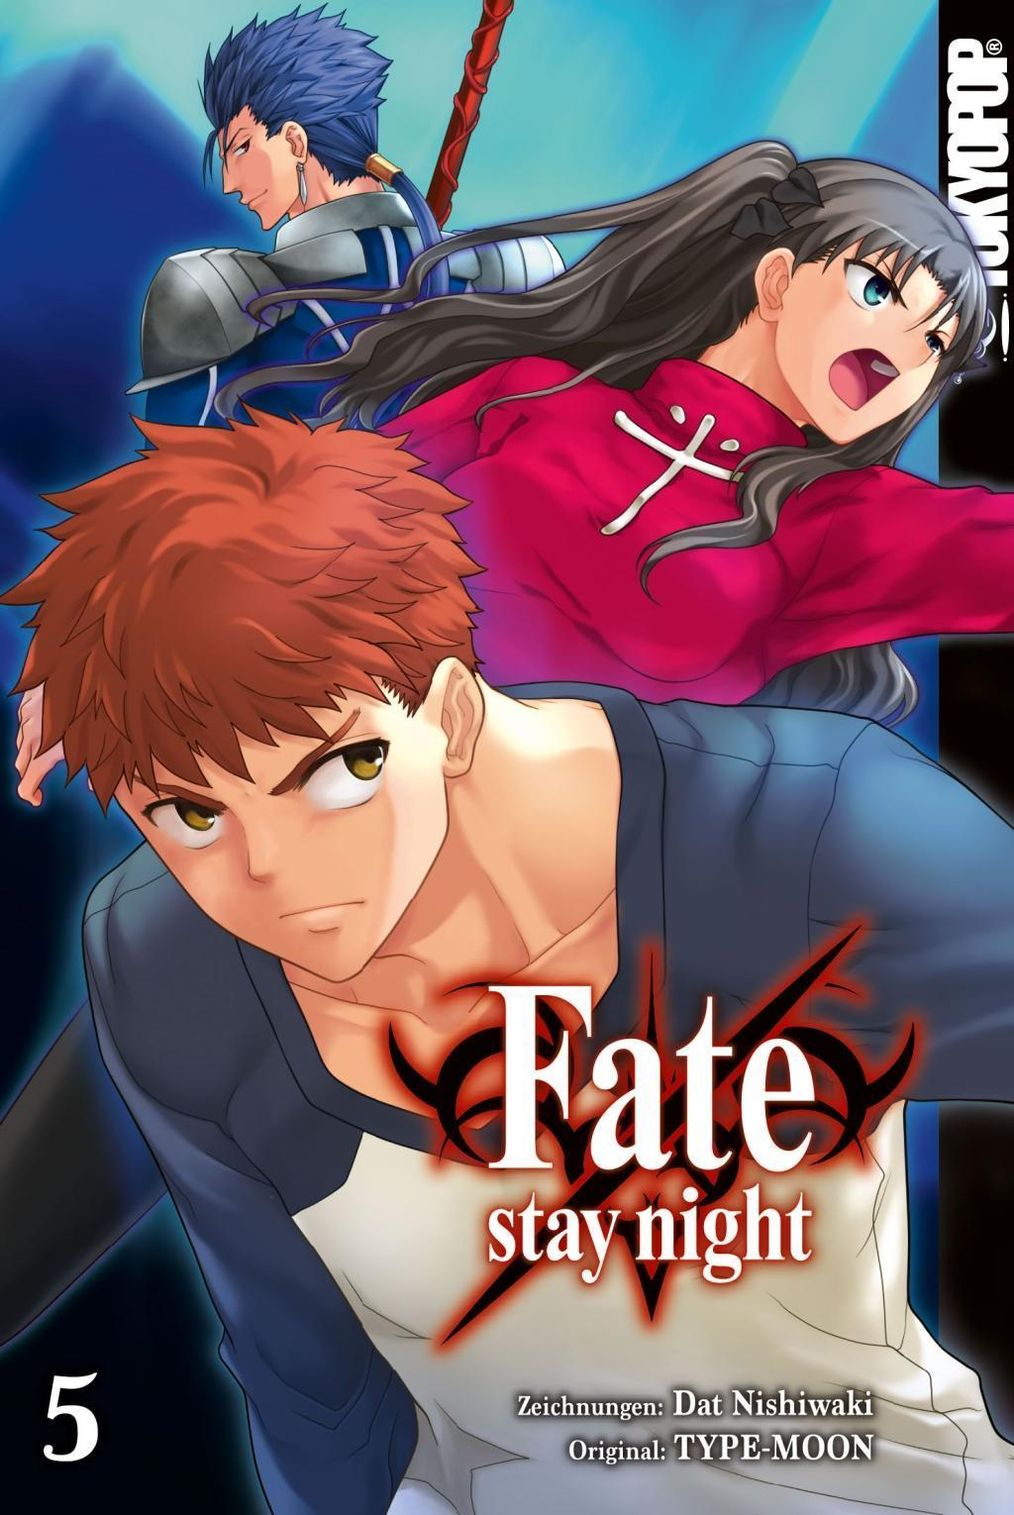 Fate/Stay Night 1: v. 1 : Nishiwaki, Dat, Type-Moon, Nishiwaki